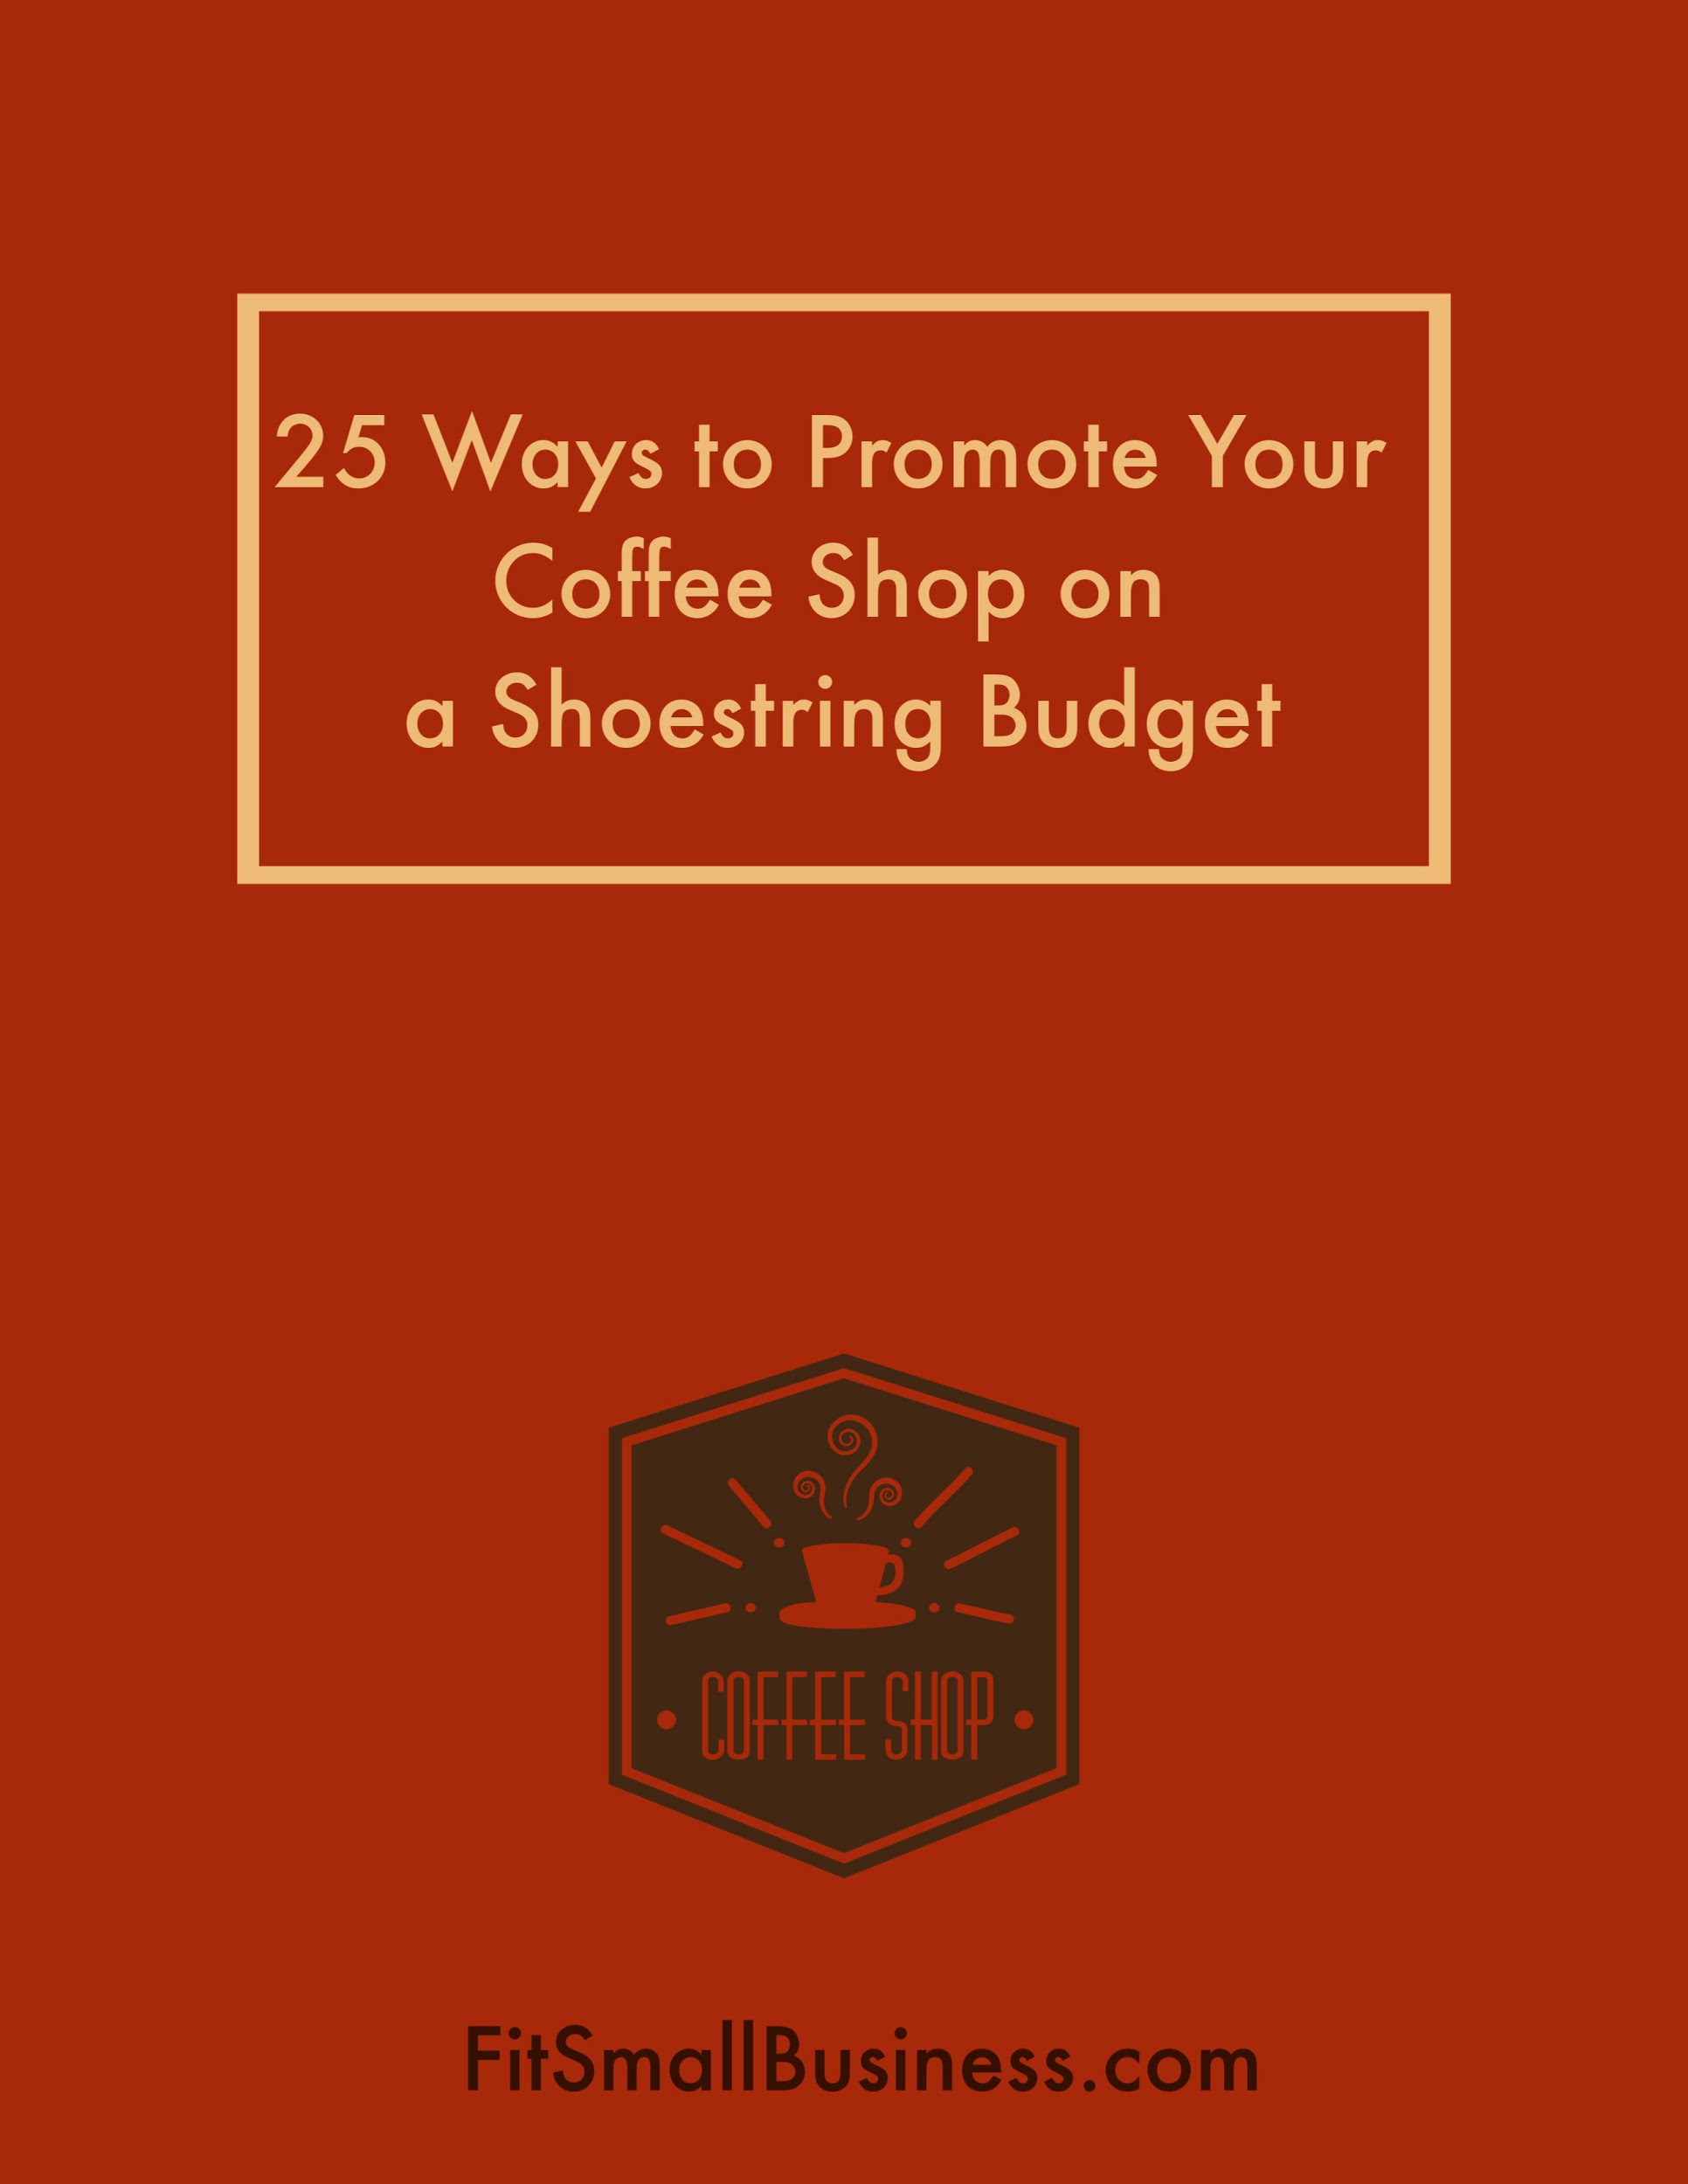 25种方法让你的咖啡店在小预算下得到推广